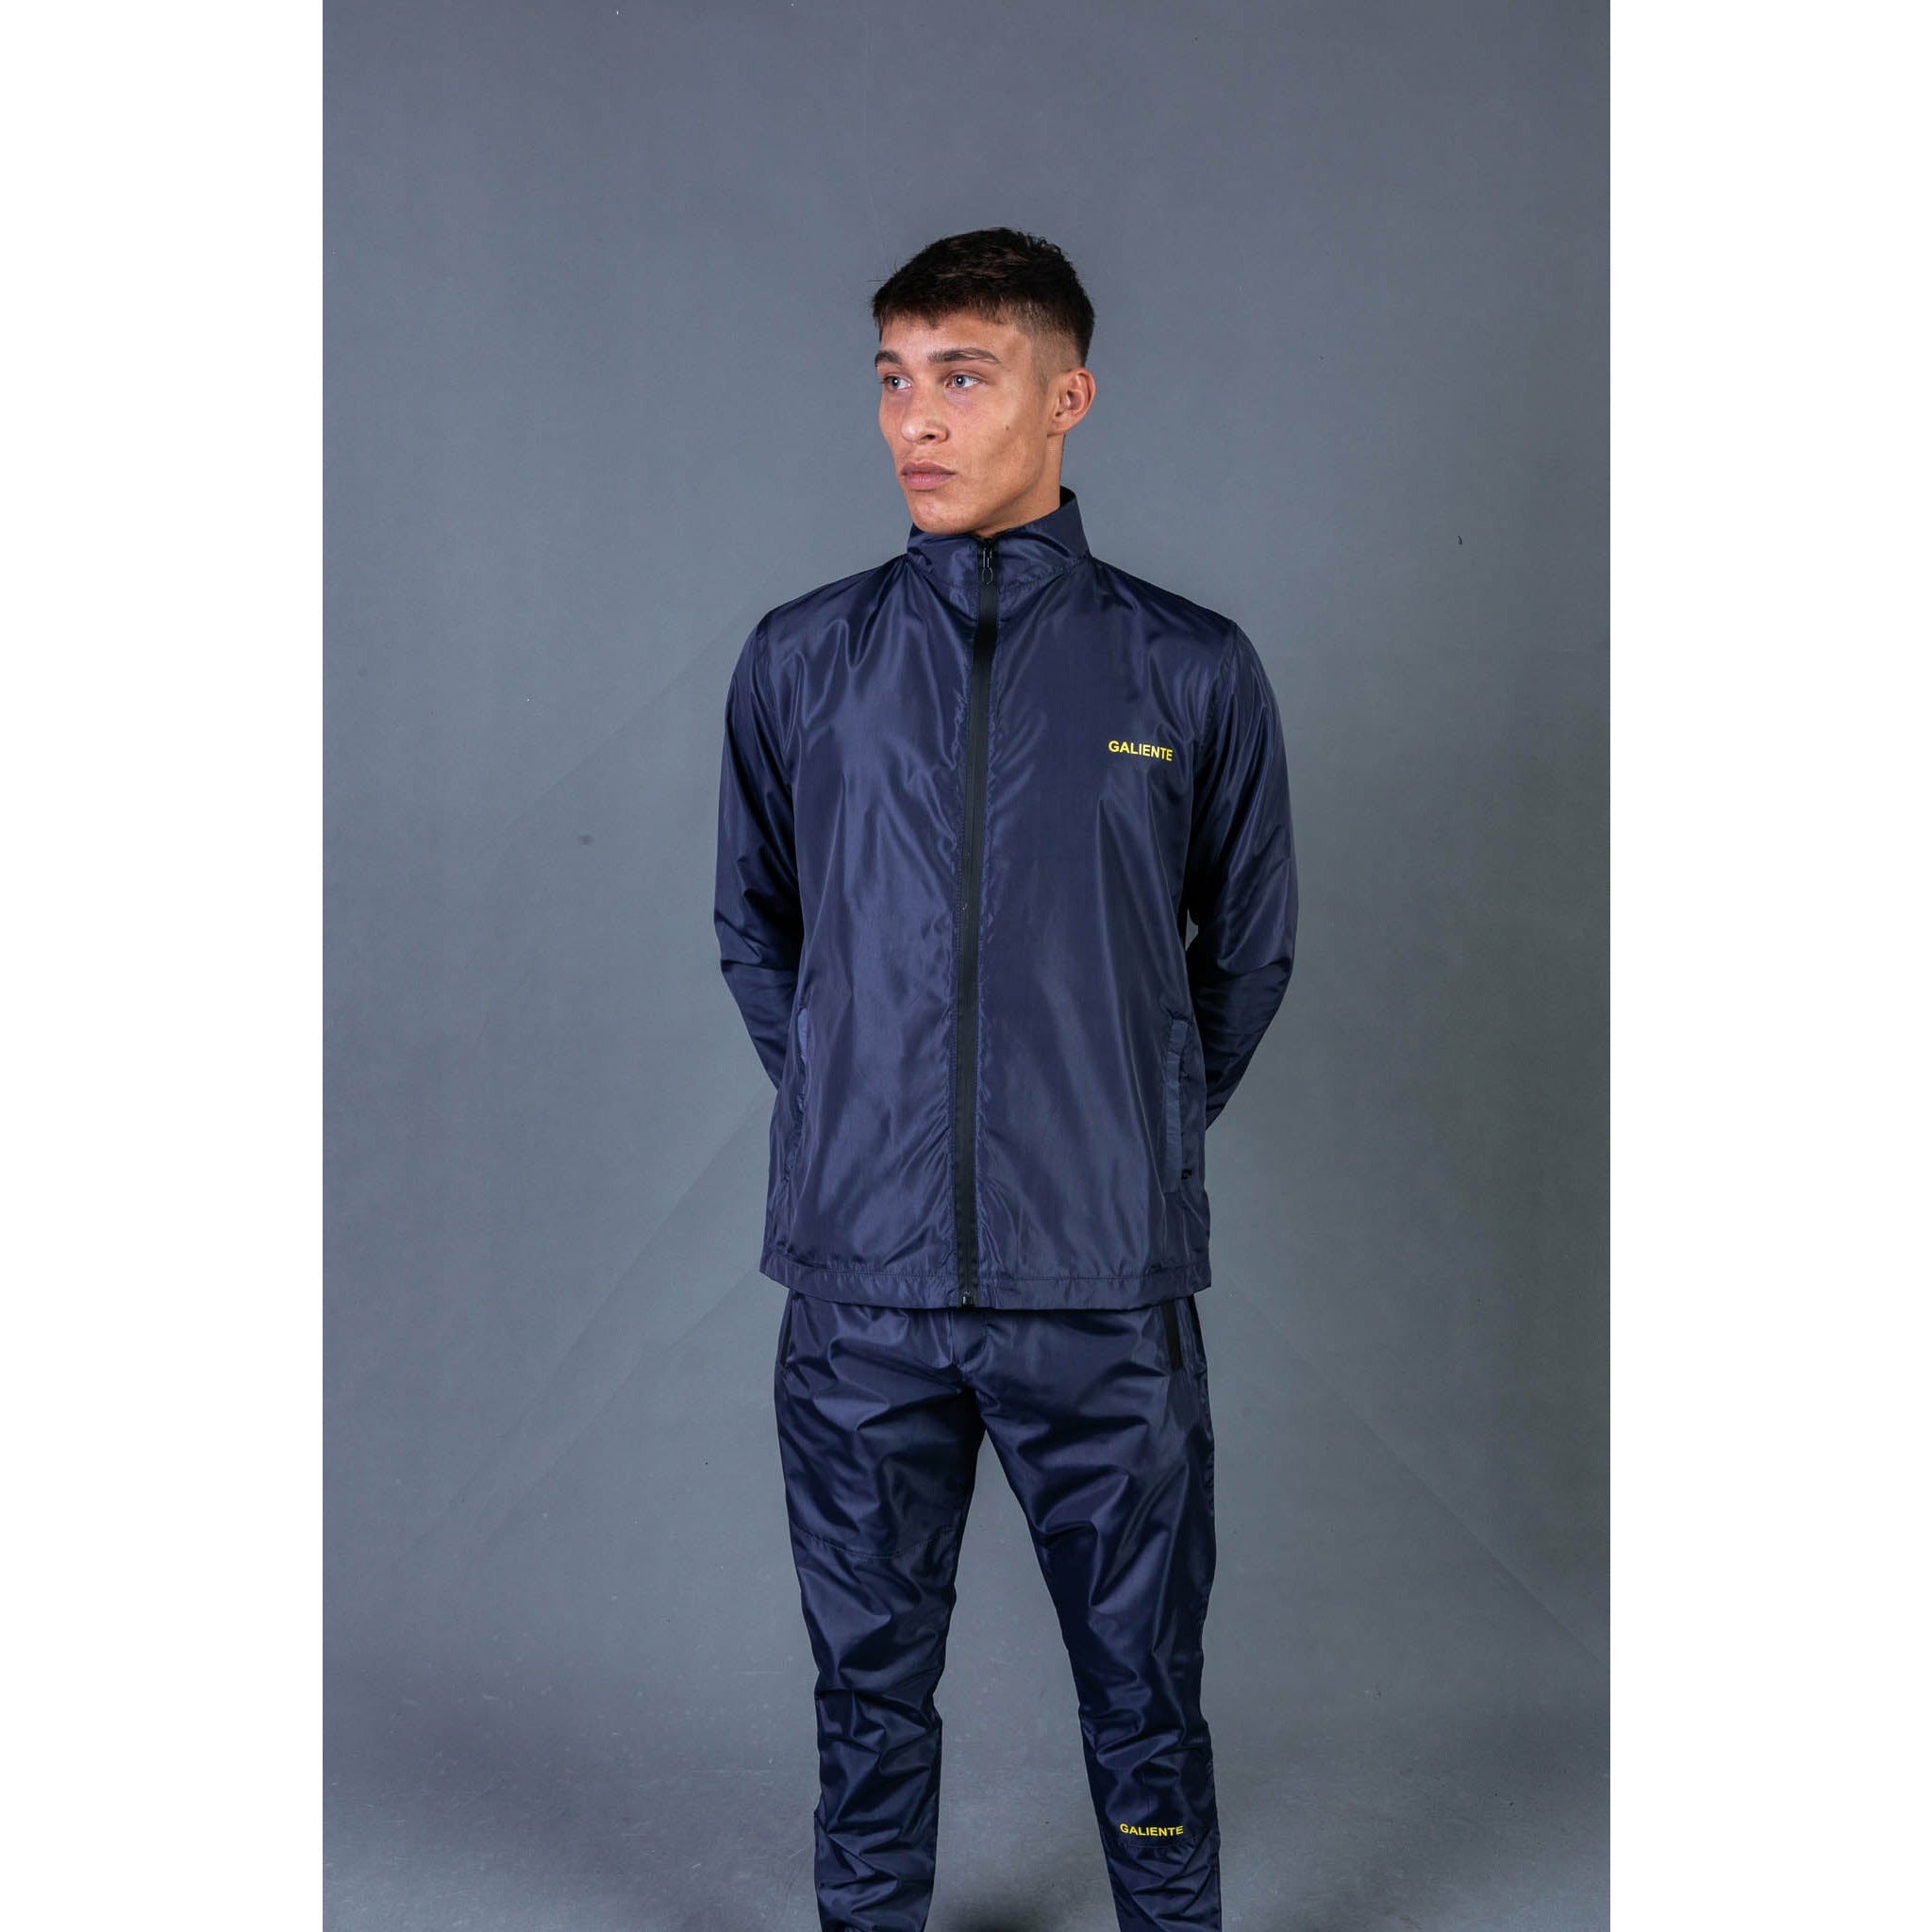 Waterproof navy blue jacket